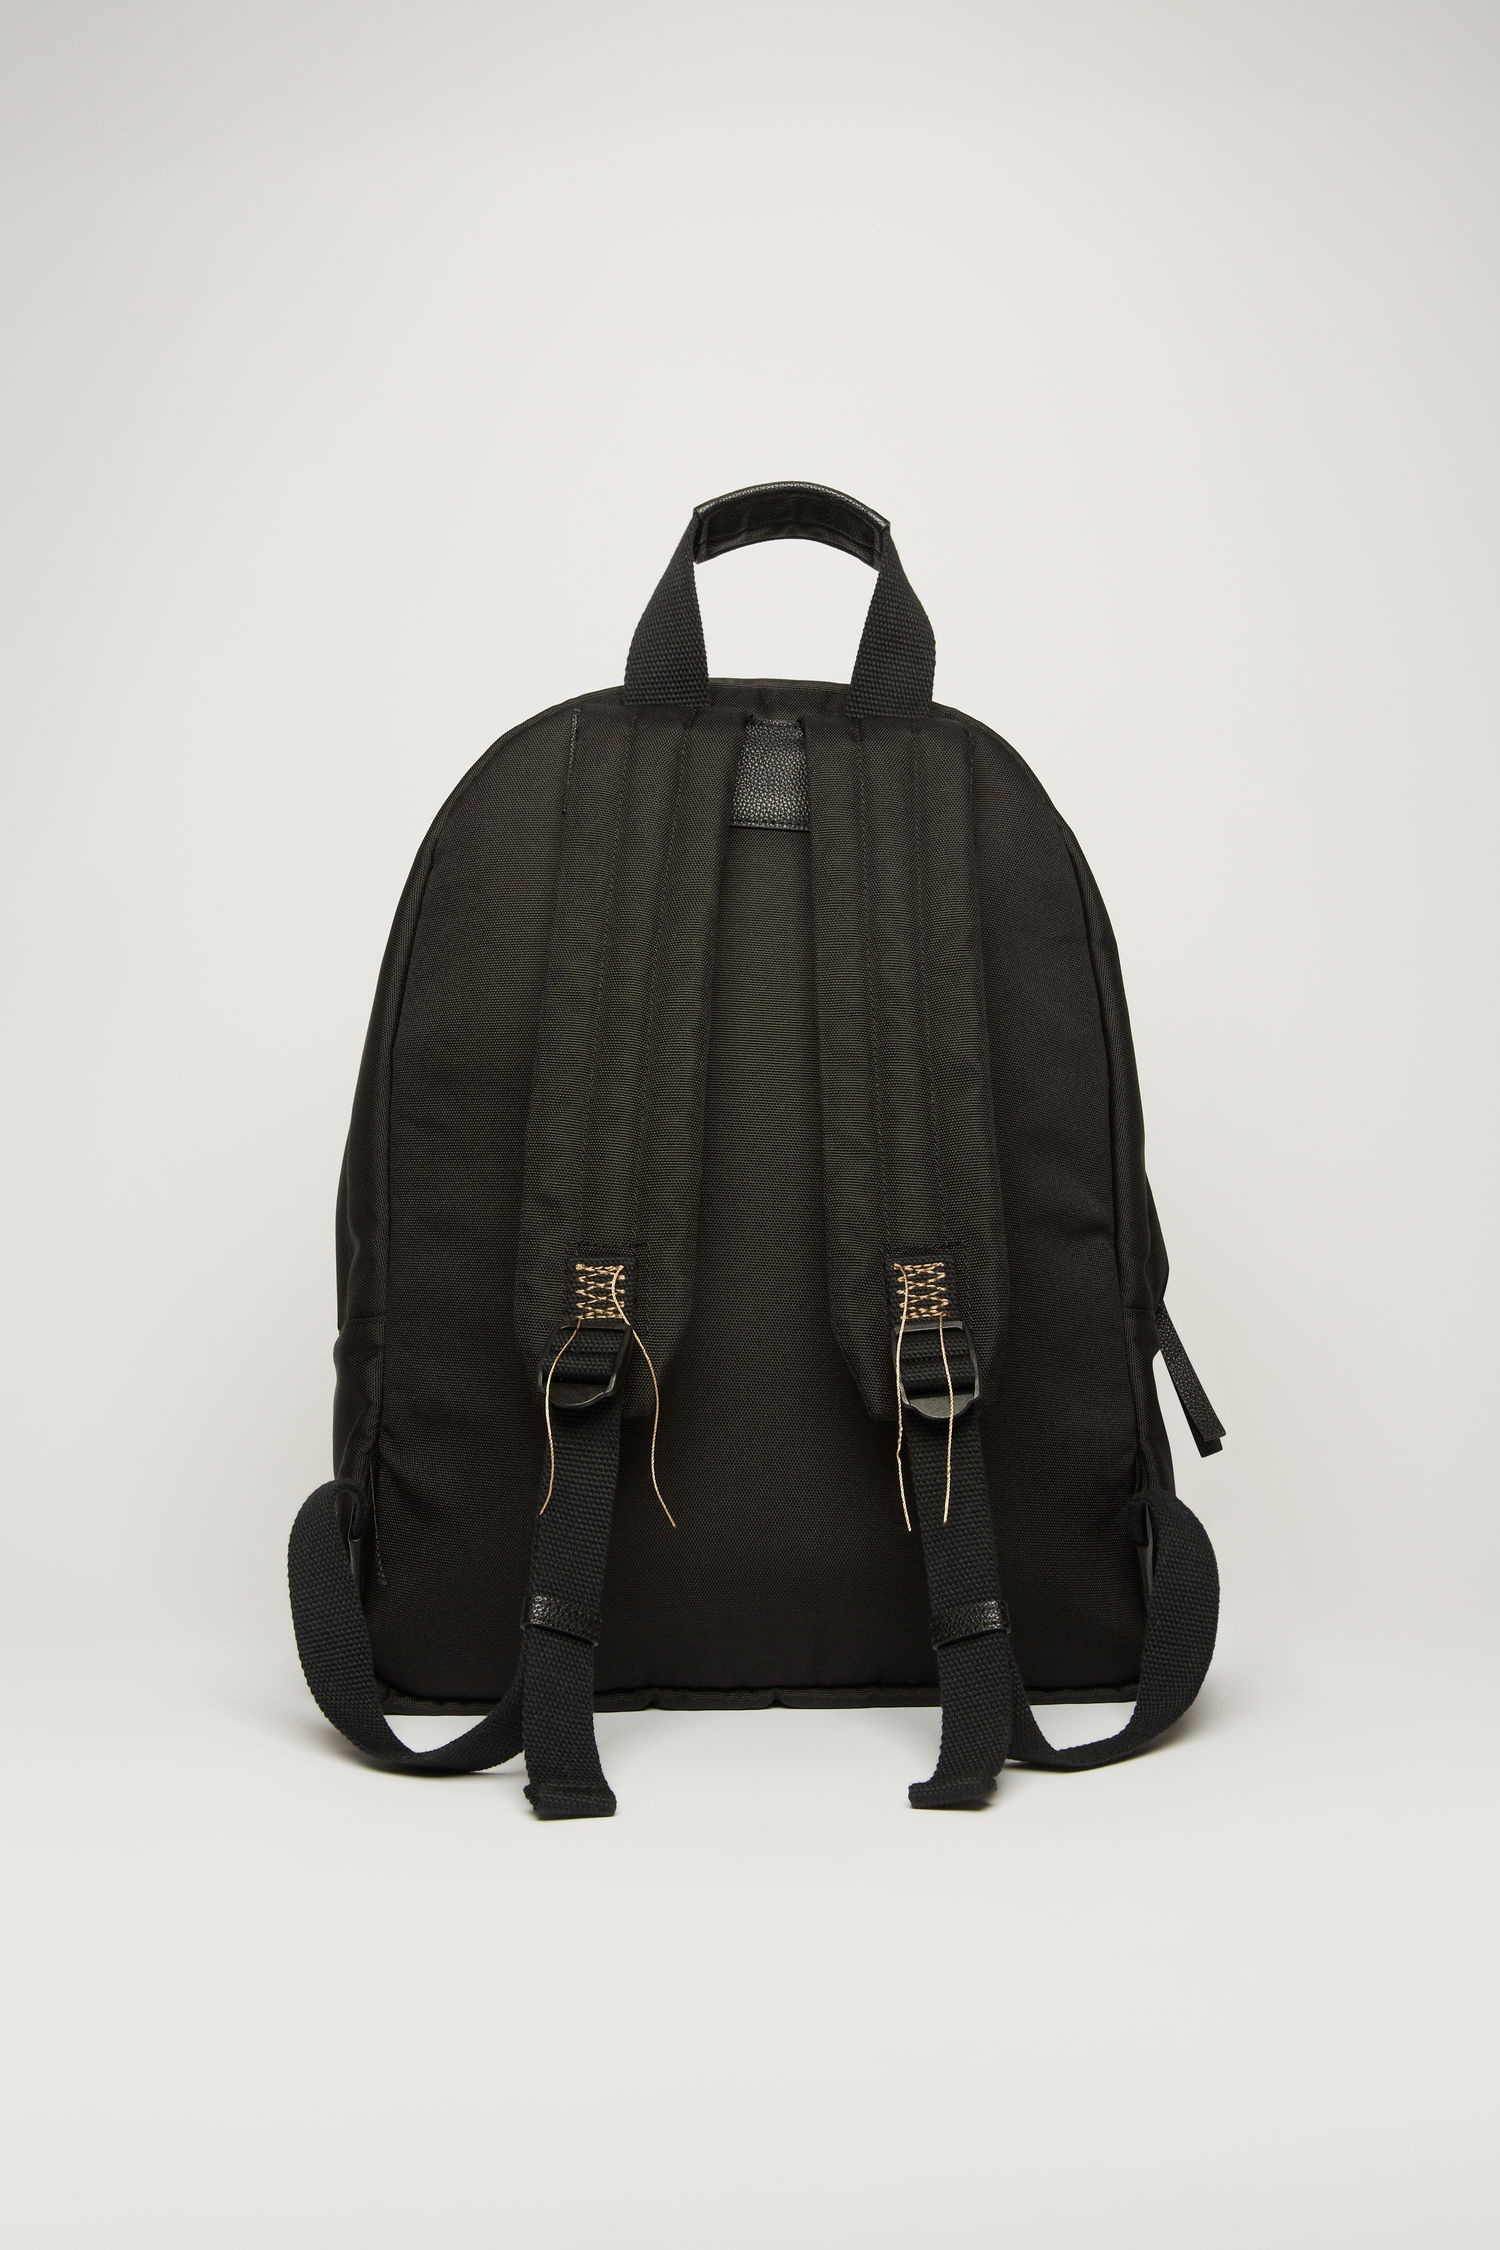 Backpack black - 3